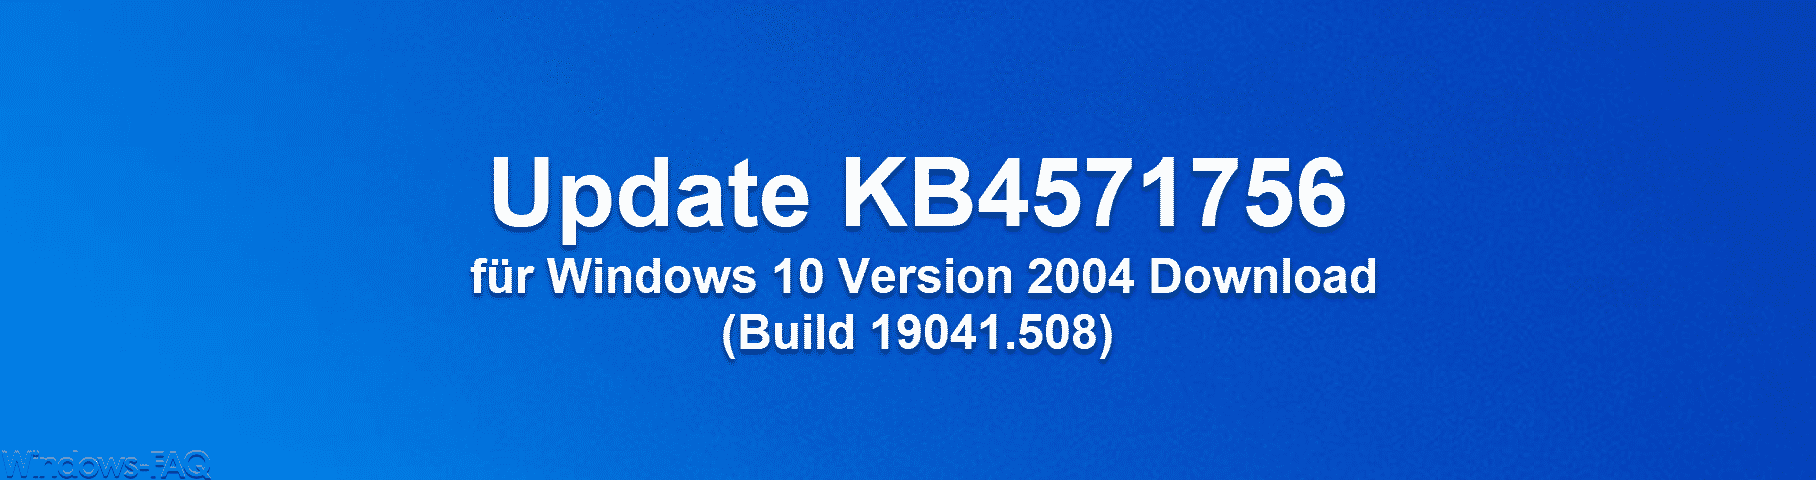 Update KB4571756 für Windows 10 Version 2004 Download (Build 19041.508)